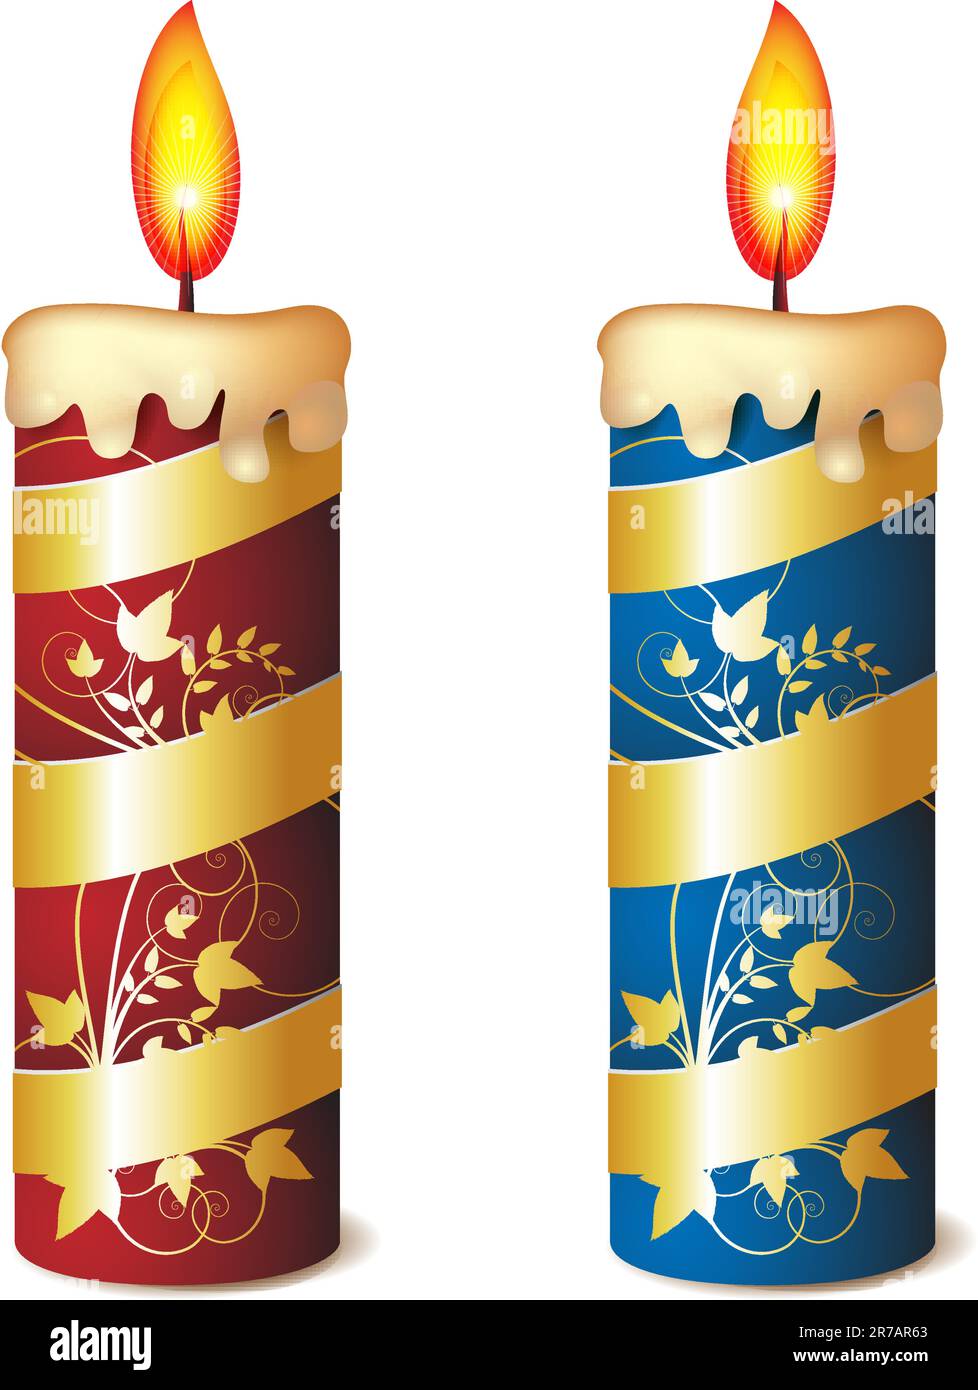 Zwei elegante Kerzen in Rot und Blau mit goldenem Band Stock Vektor